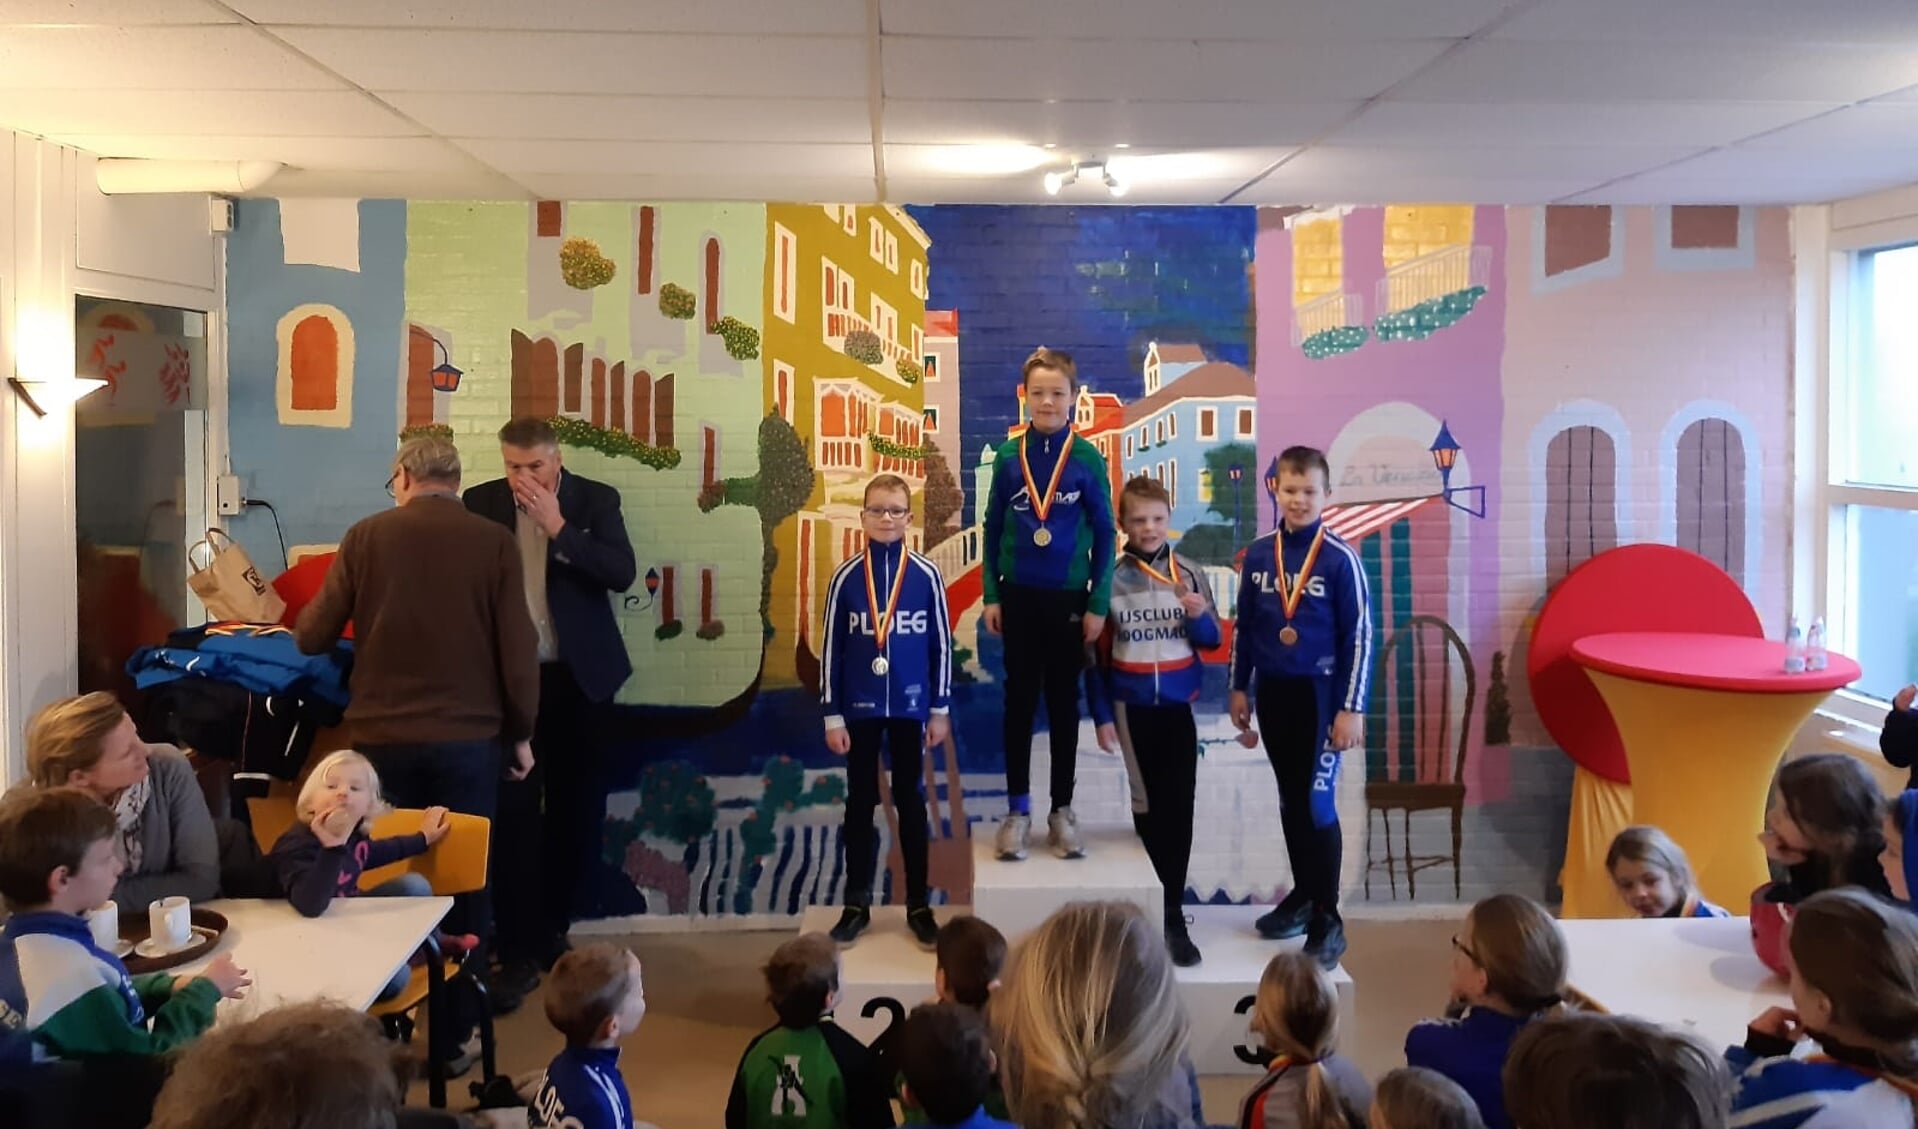 Stijn Vergeer wint goud bij de districtskampioenschappen. 